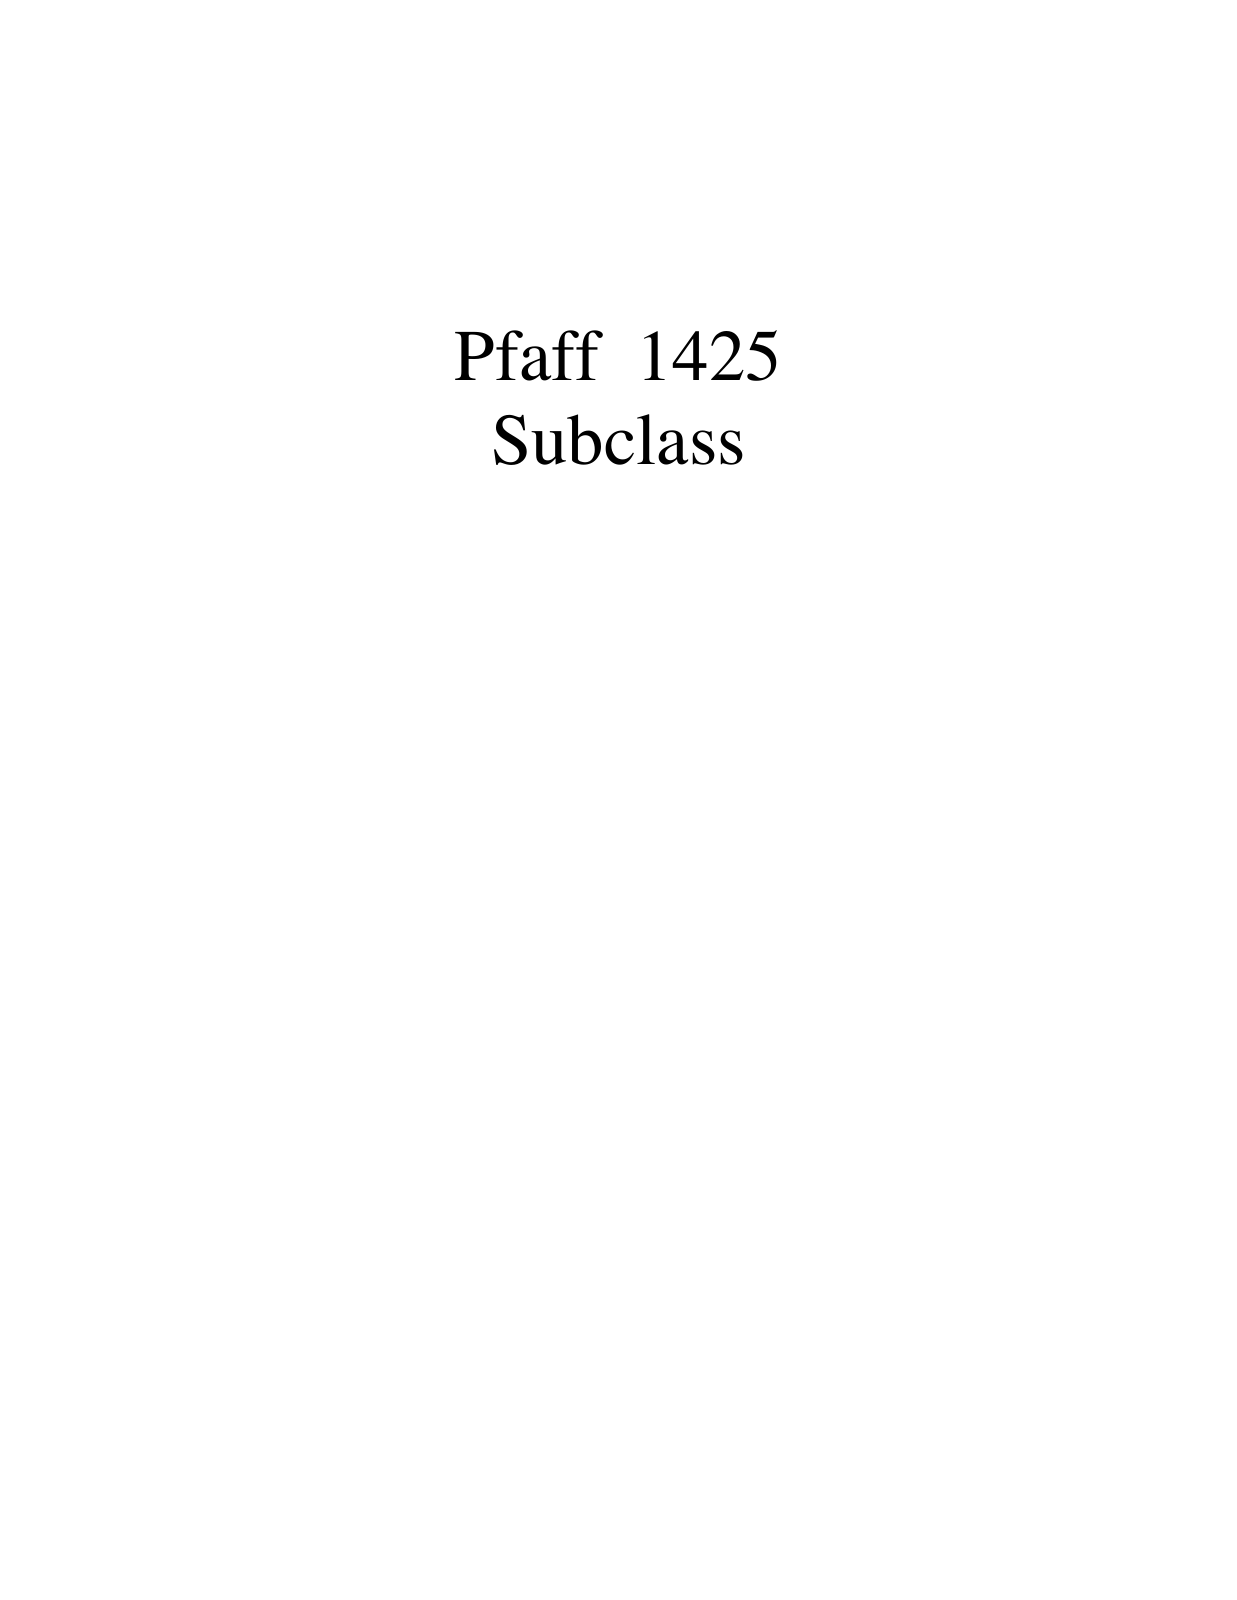 PFAFF 1425 Parts List